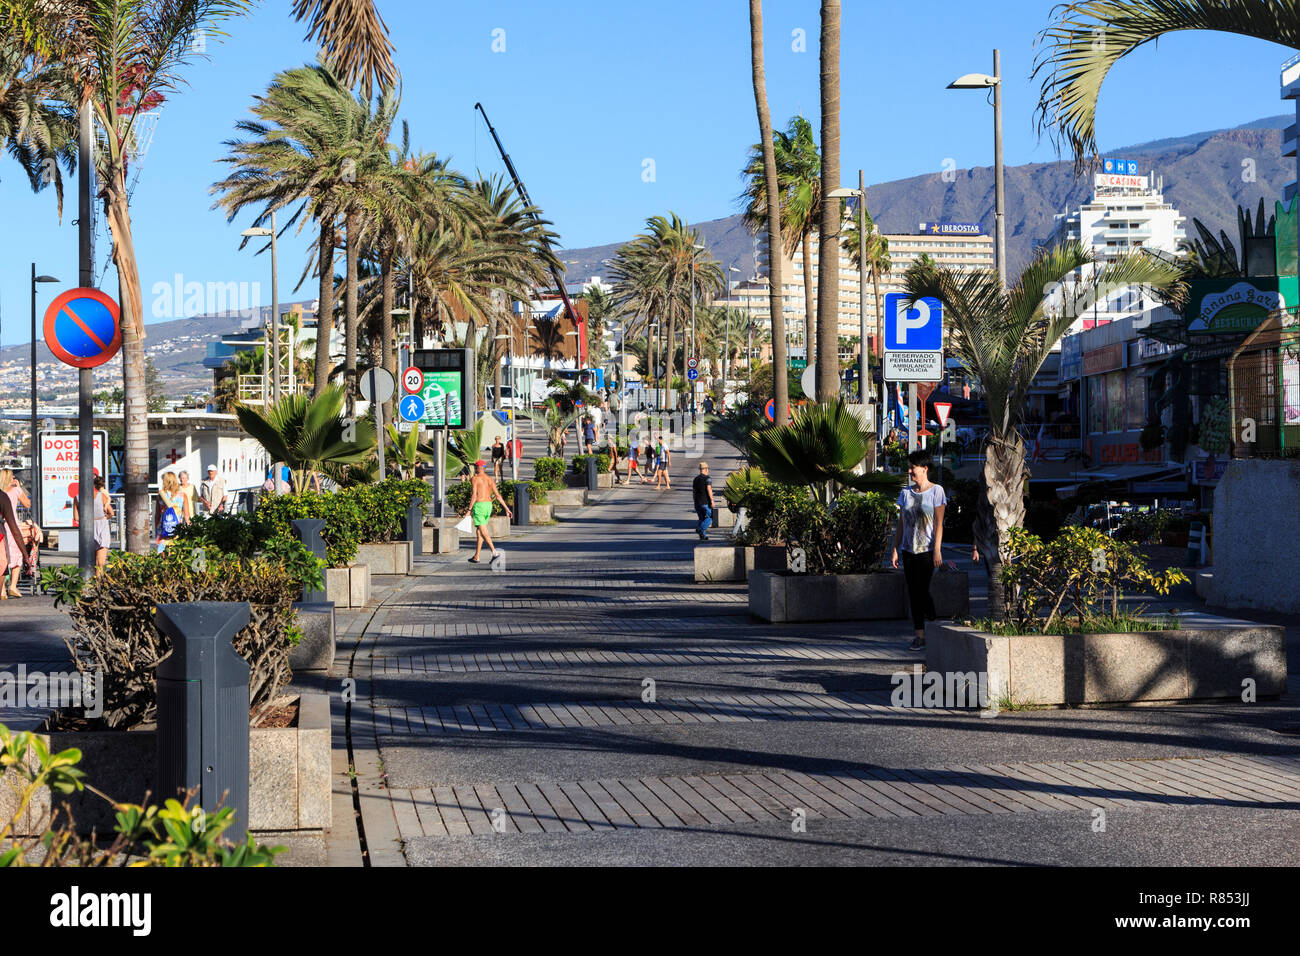 Playa de las Americas, Tenerife, Canary Island, une île espagnole, l'Espagne, au large de la côte nord de l'Afrique de l'ouest. Banque D'Images